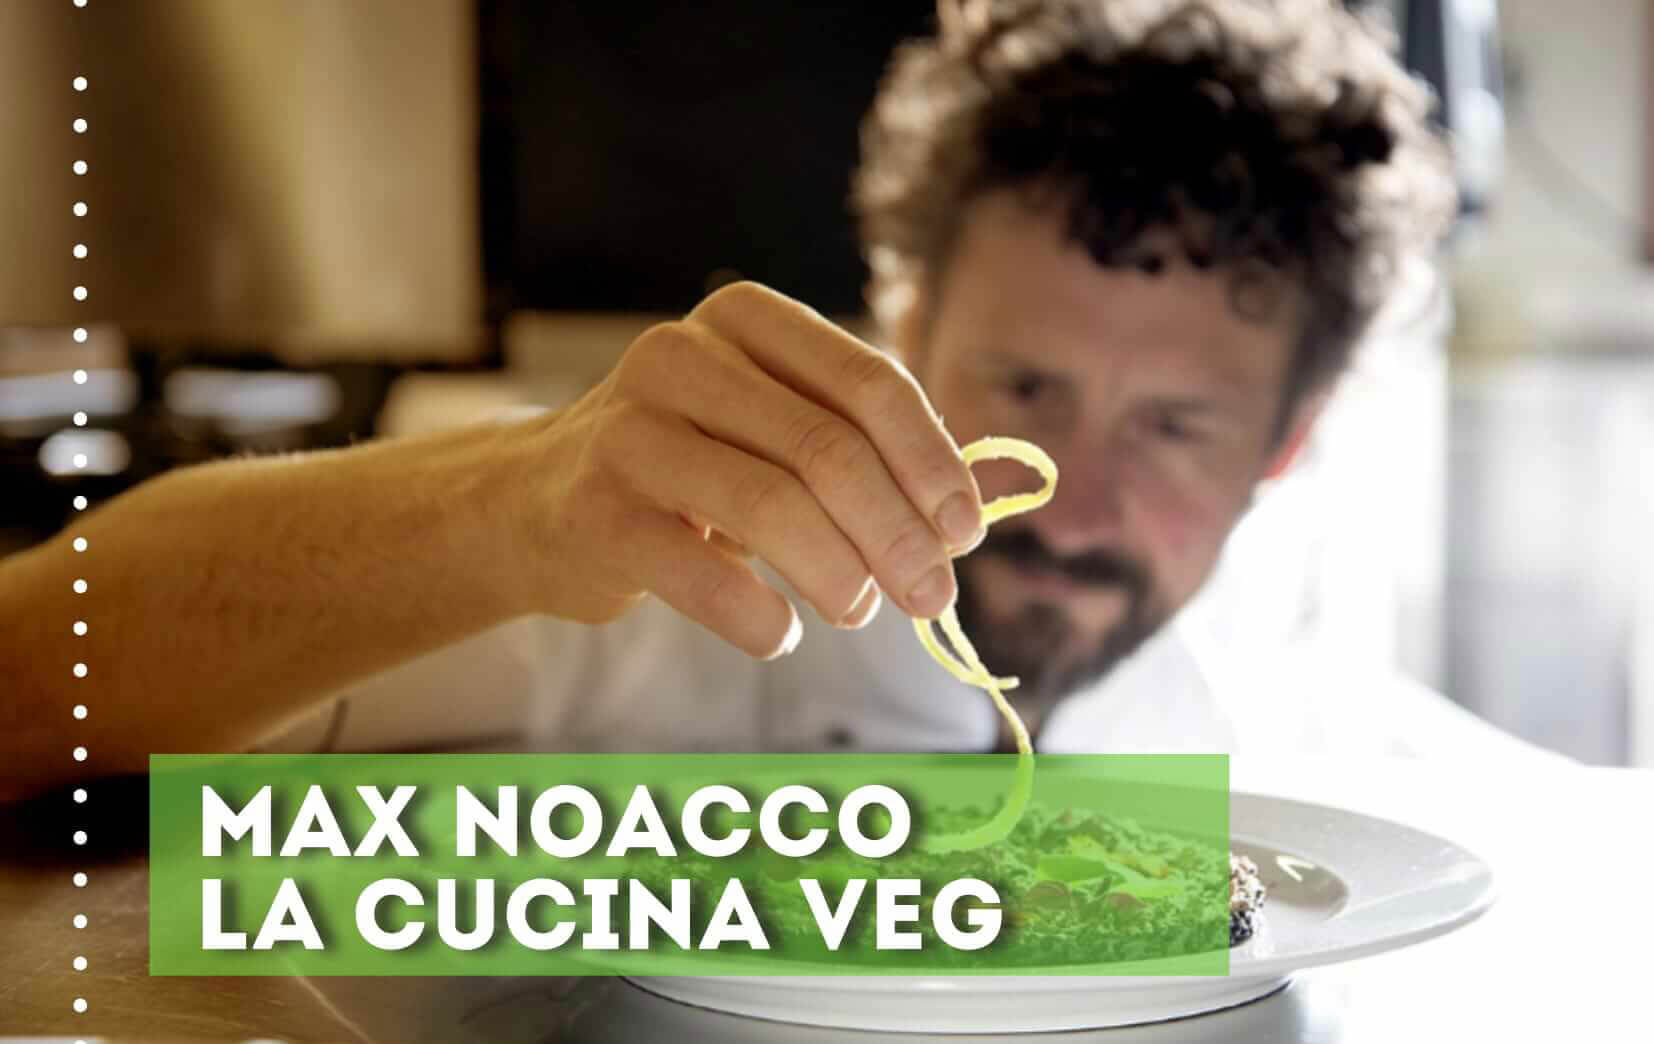 Max Noacco la cucina veg